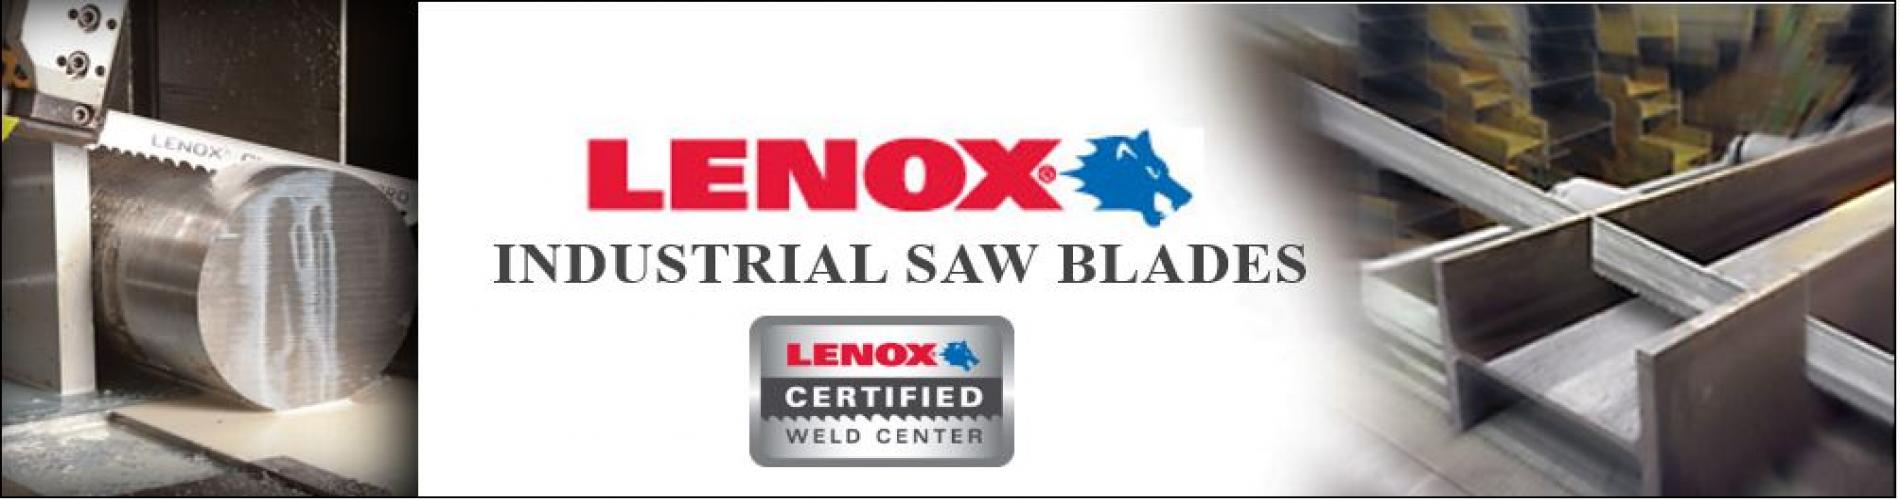 Banner - Lenox Certified Weld Center